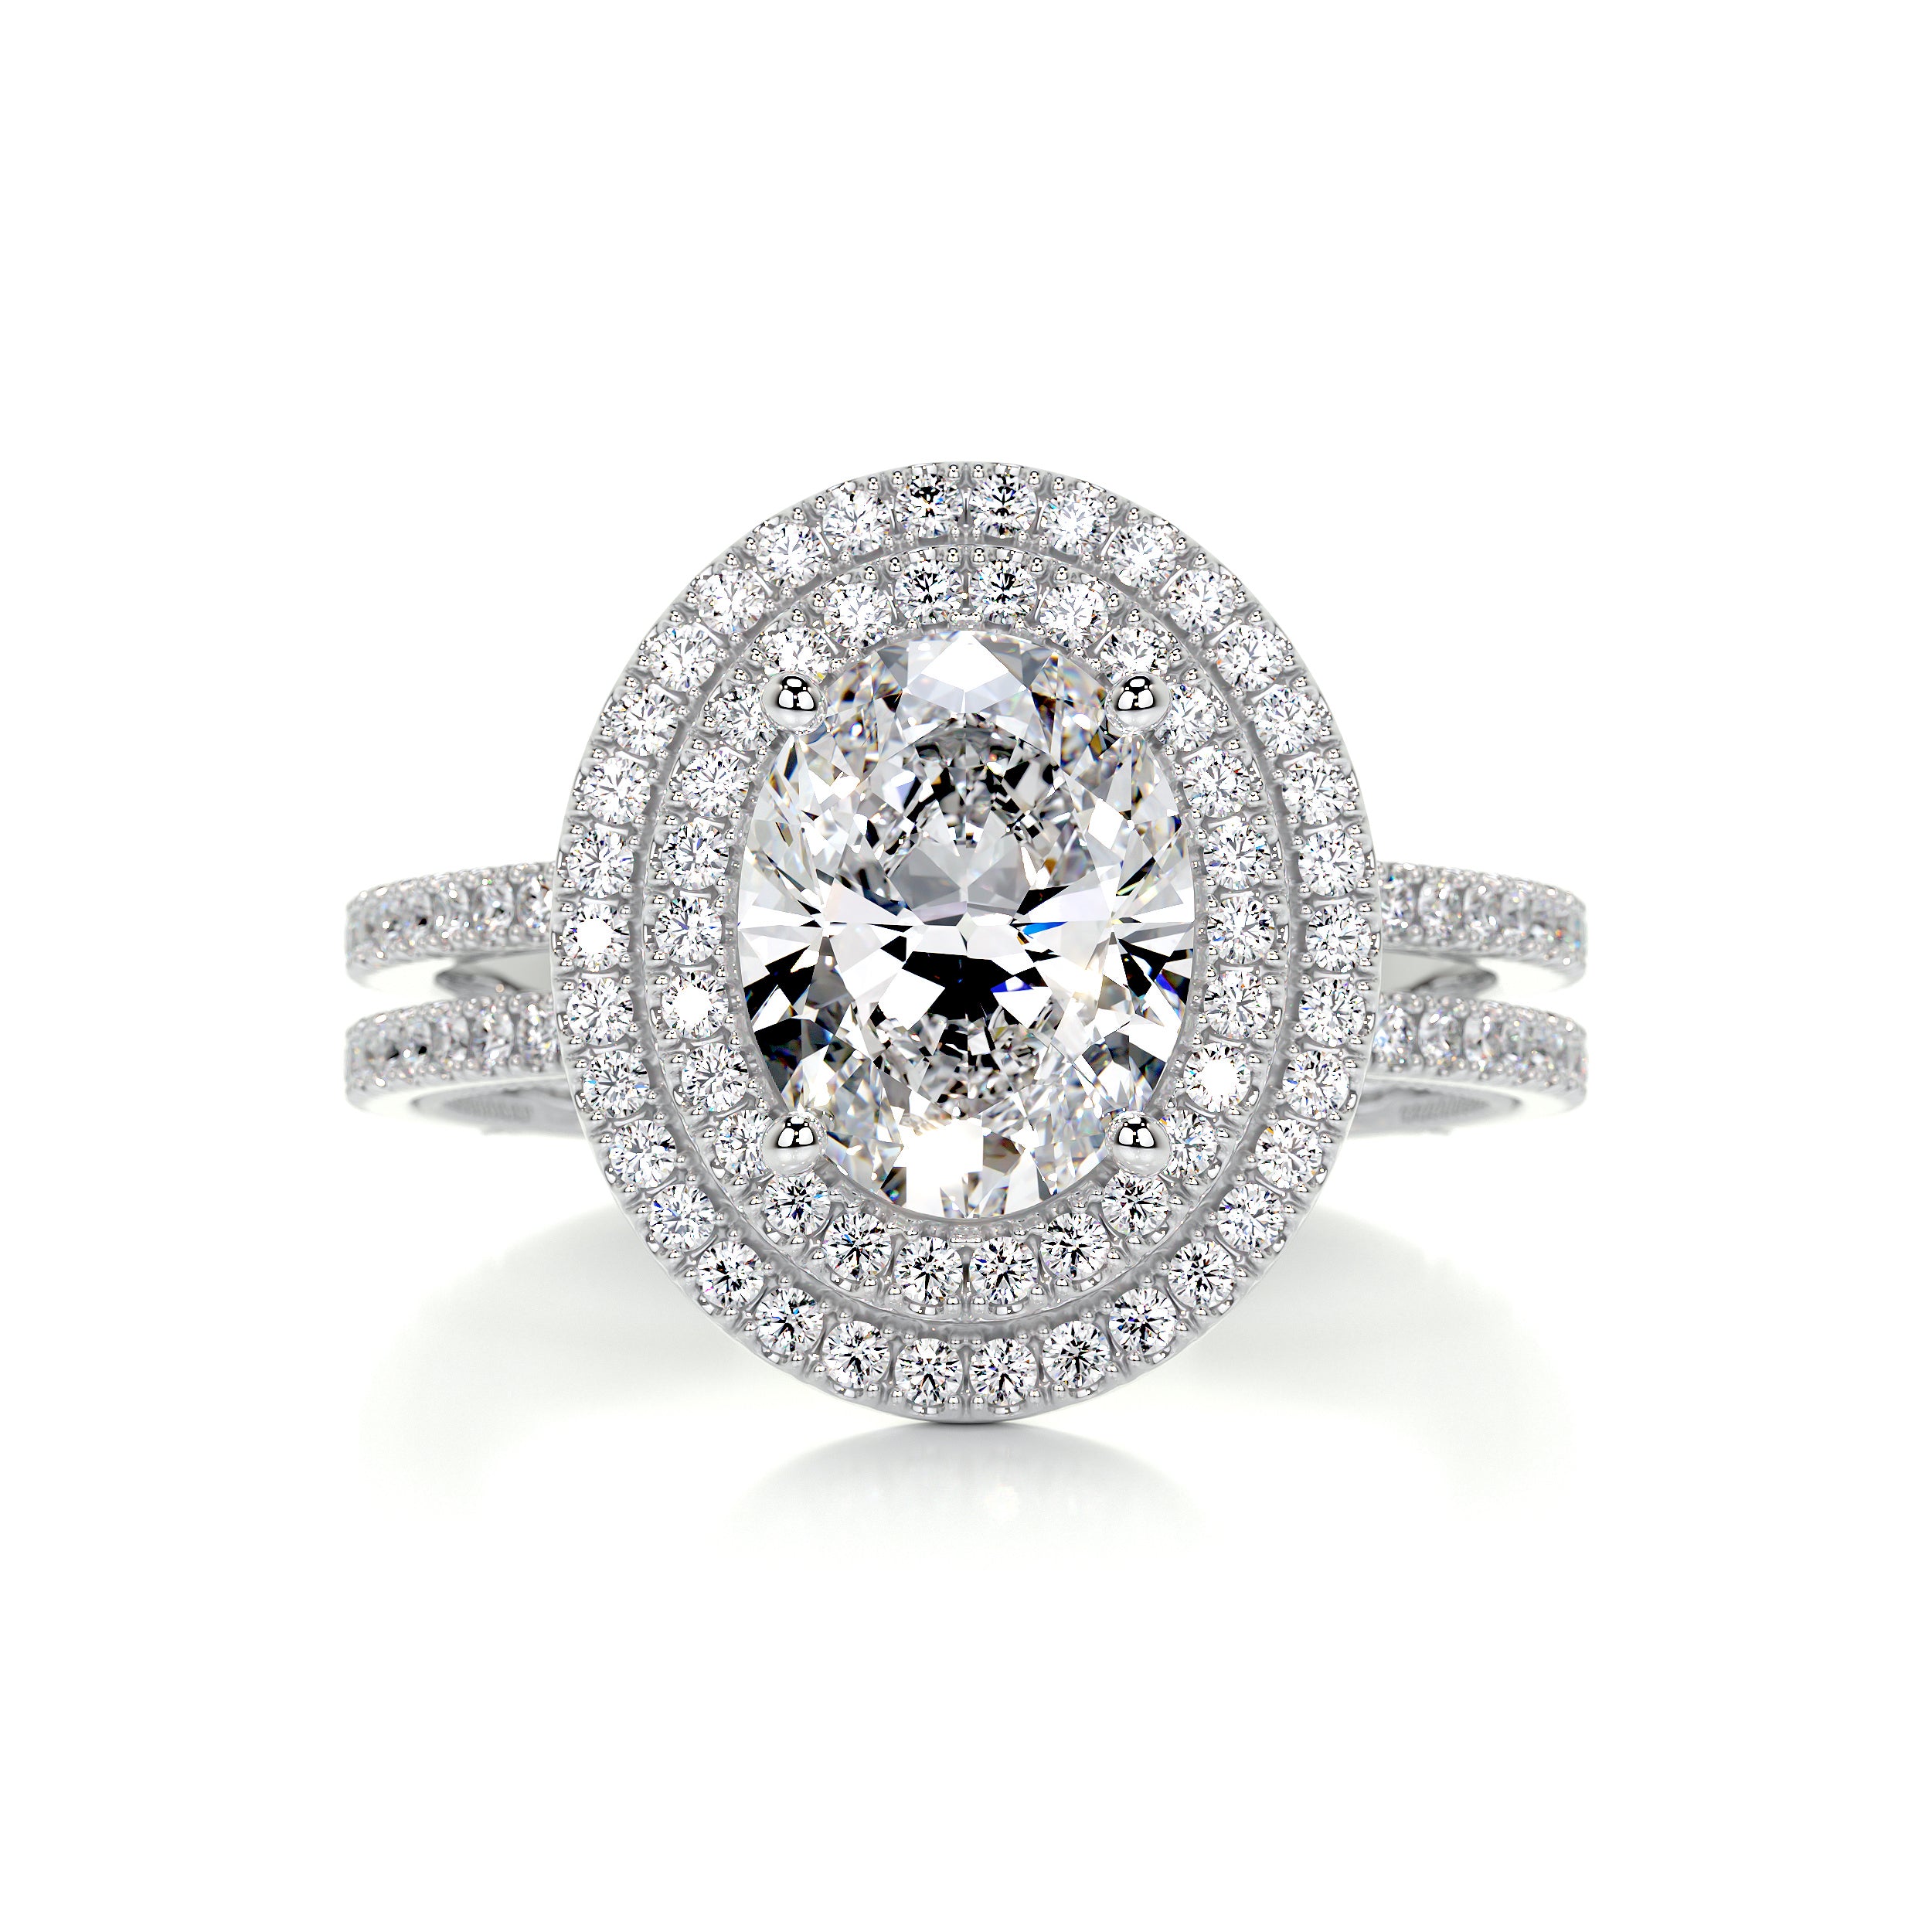 Willa Diamond Engagement Ring   (3 Carat) -14K White Gold